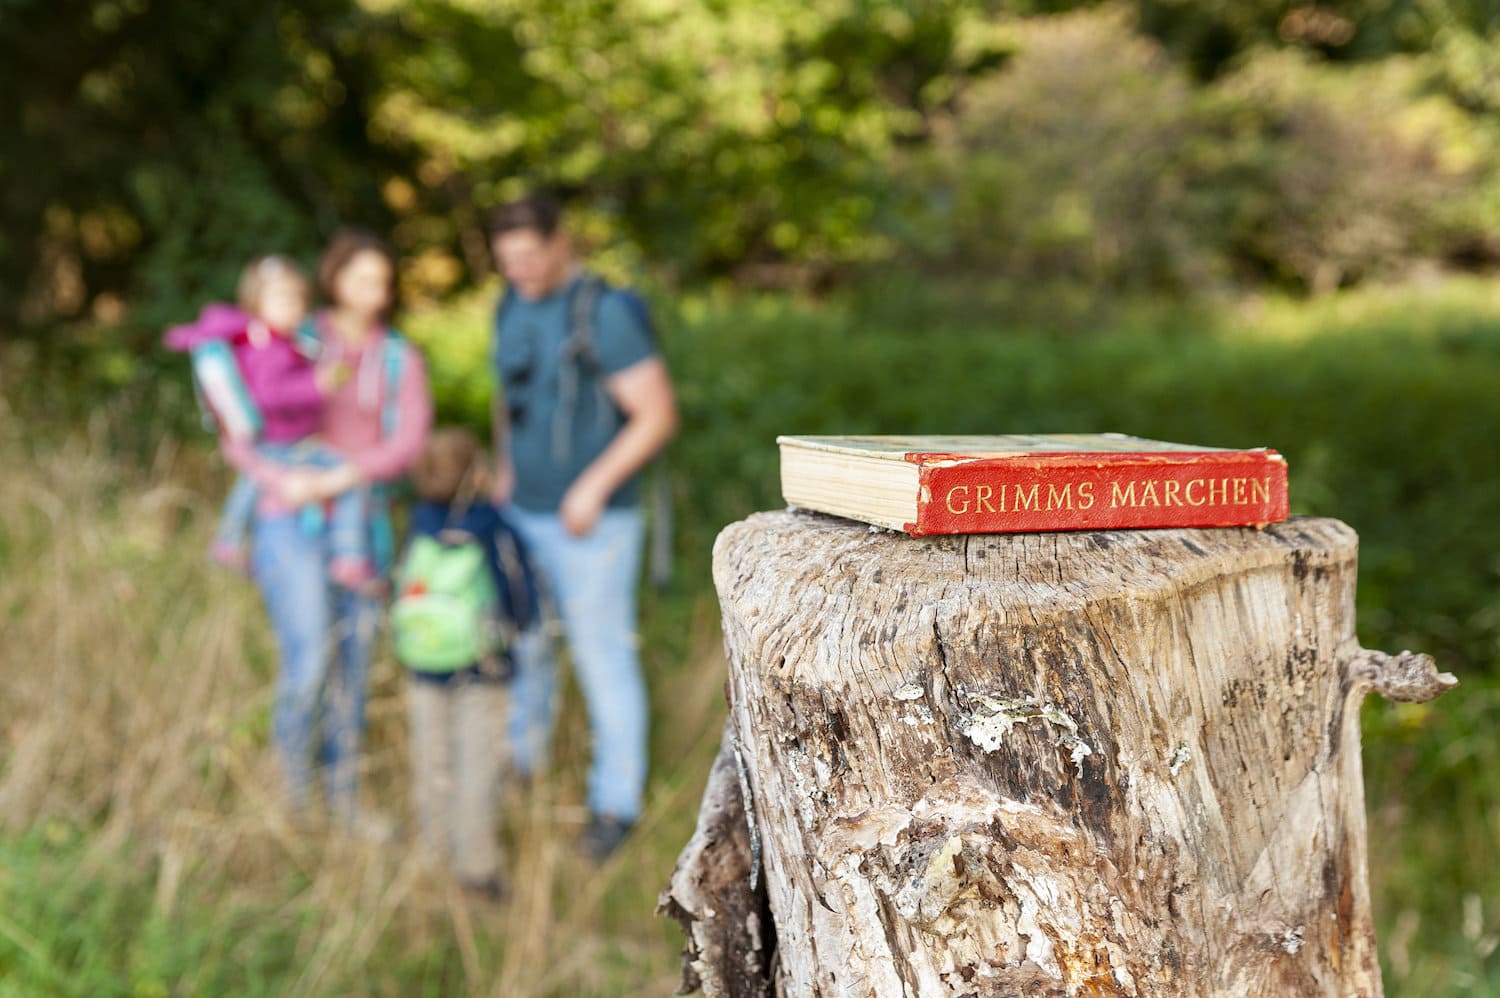 Een familie loopt door het bos. Op de voorgrond ligt een boek met de sprookjes van Grimm op een boomstronk.